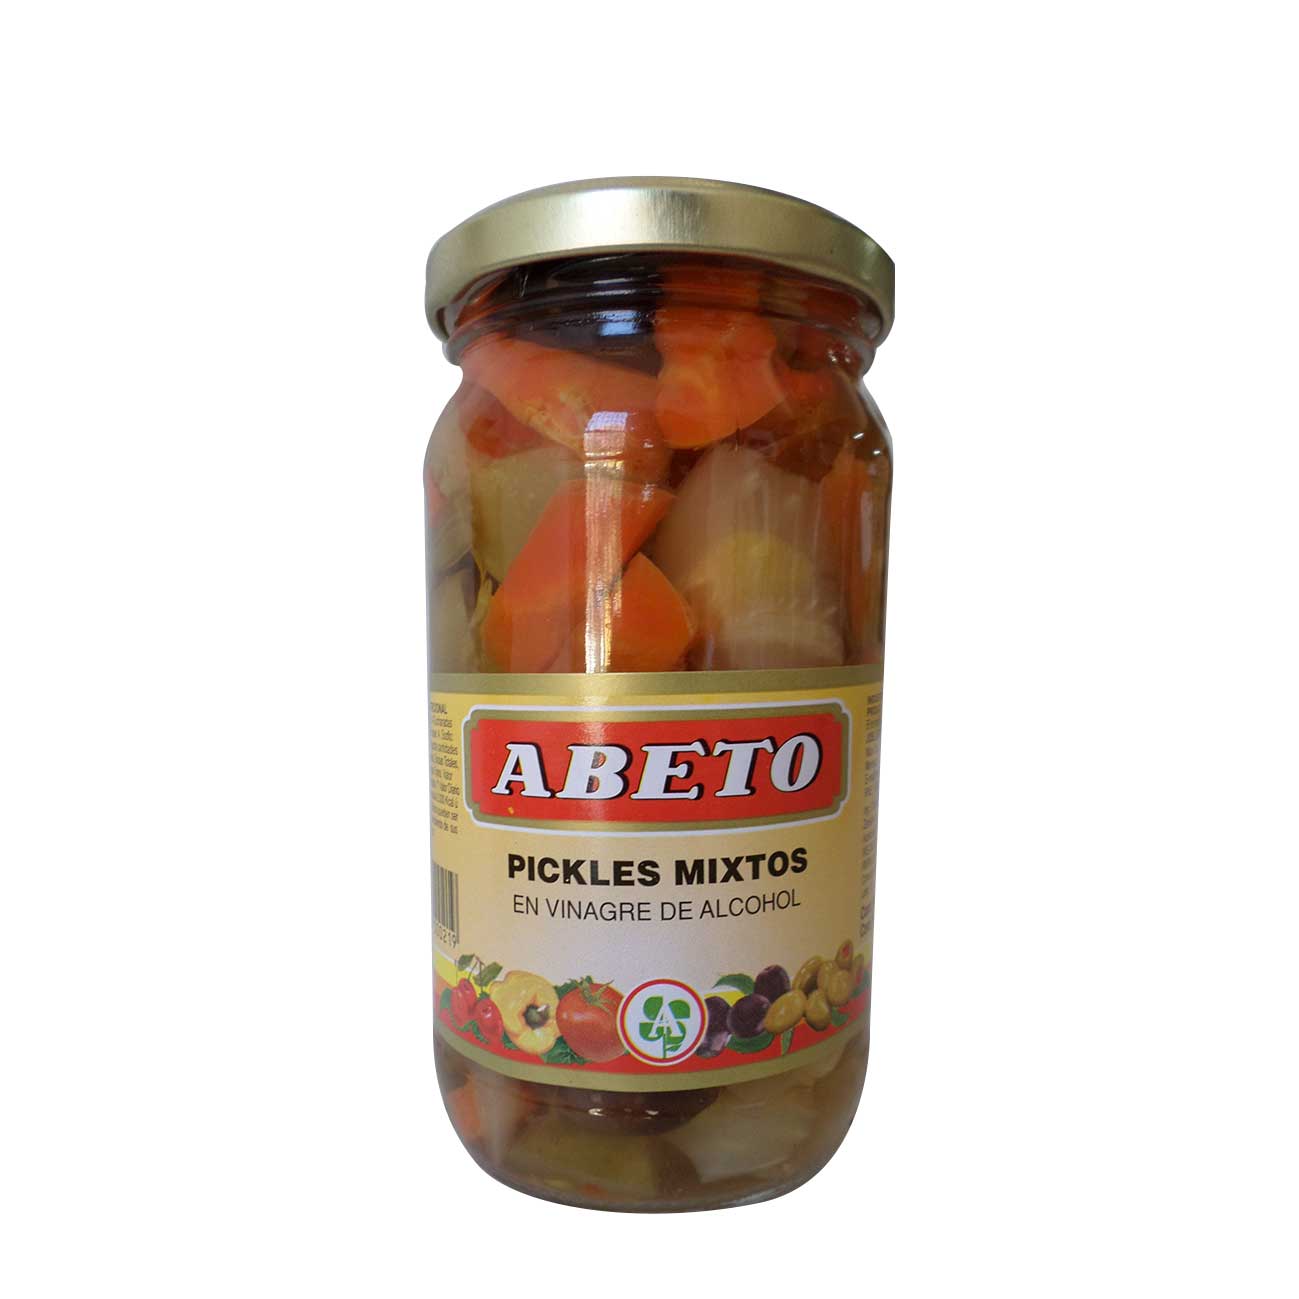 Pickles mixtos en vinagre de alcohol 300g ABETO